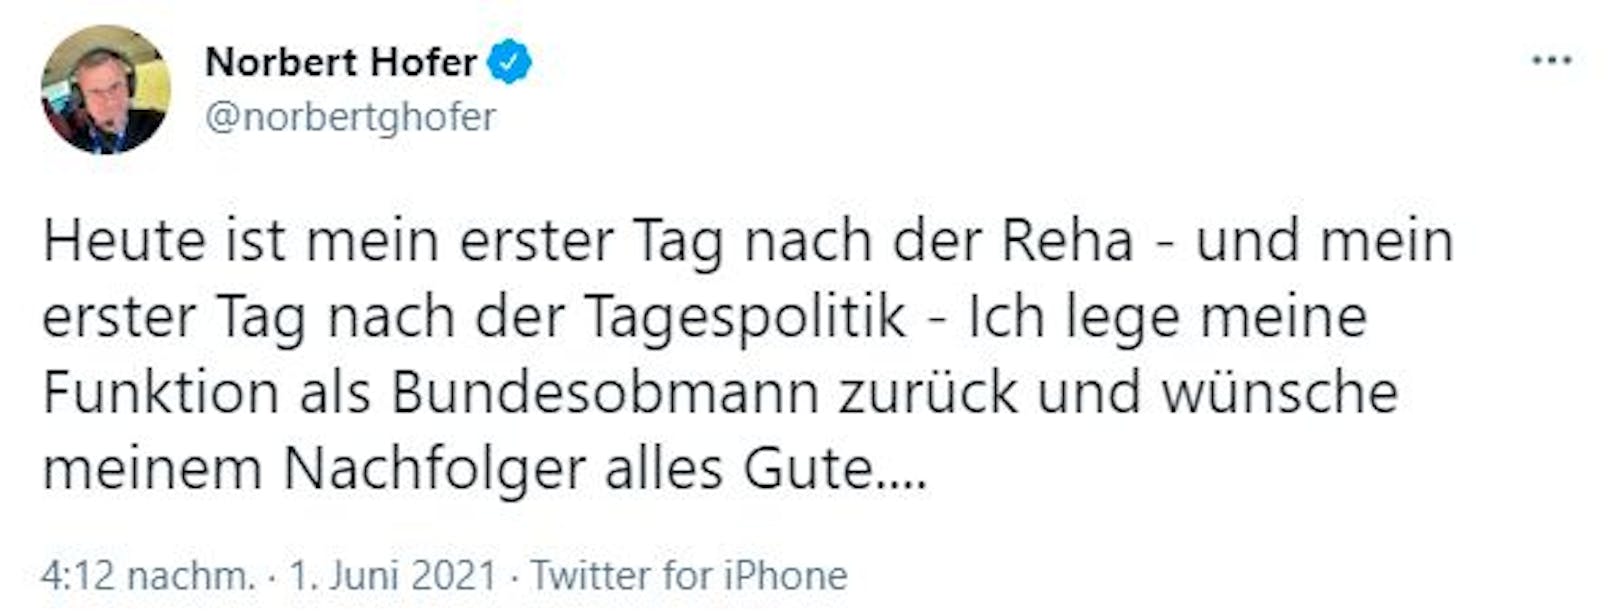 Norbert Hofer verkündete den Rücktritt – und löschte den Tweet dann wieder.